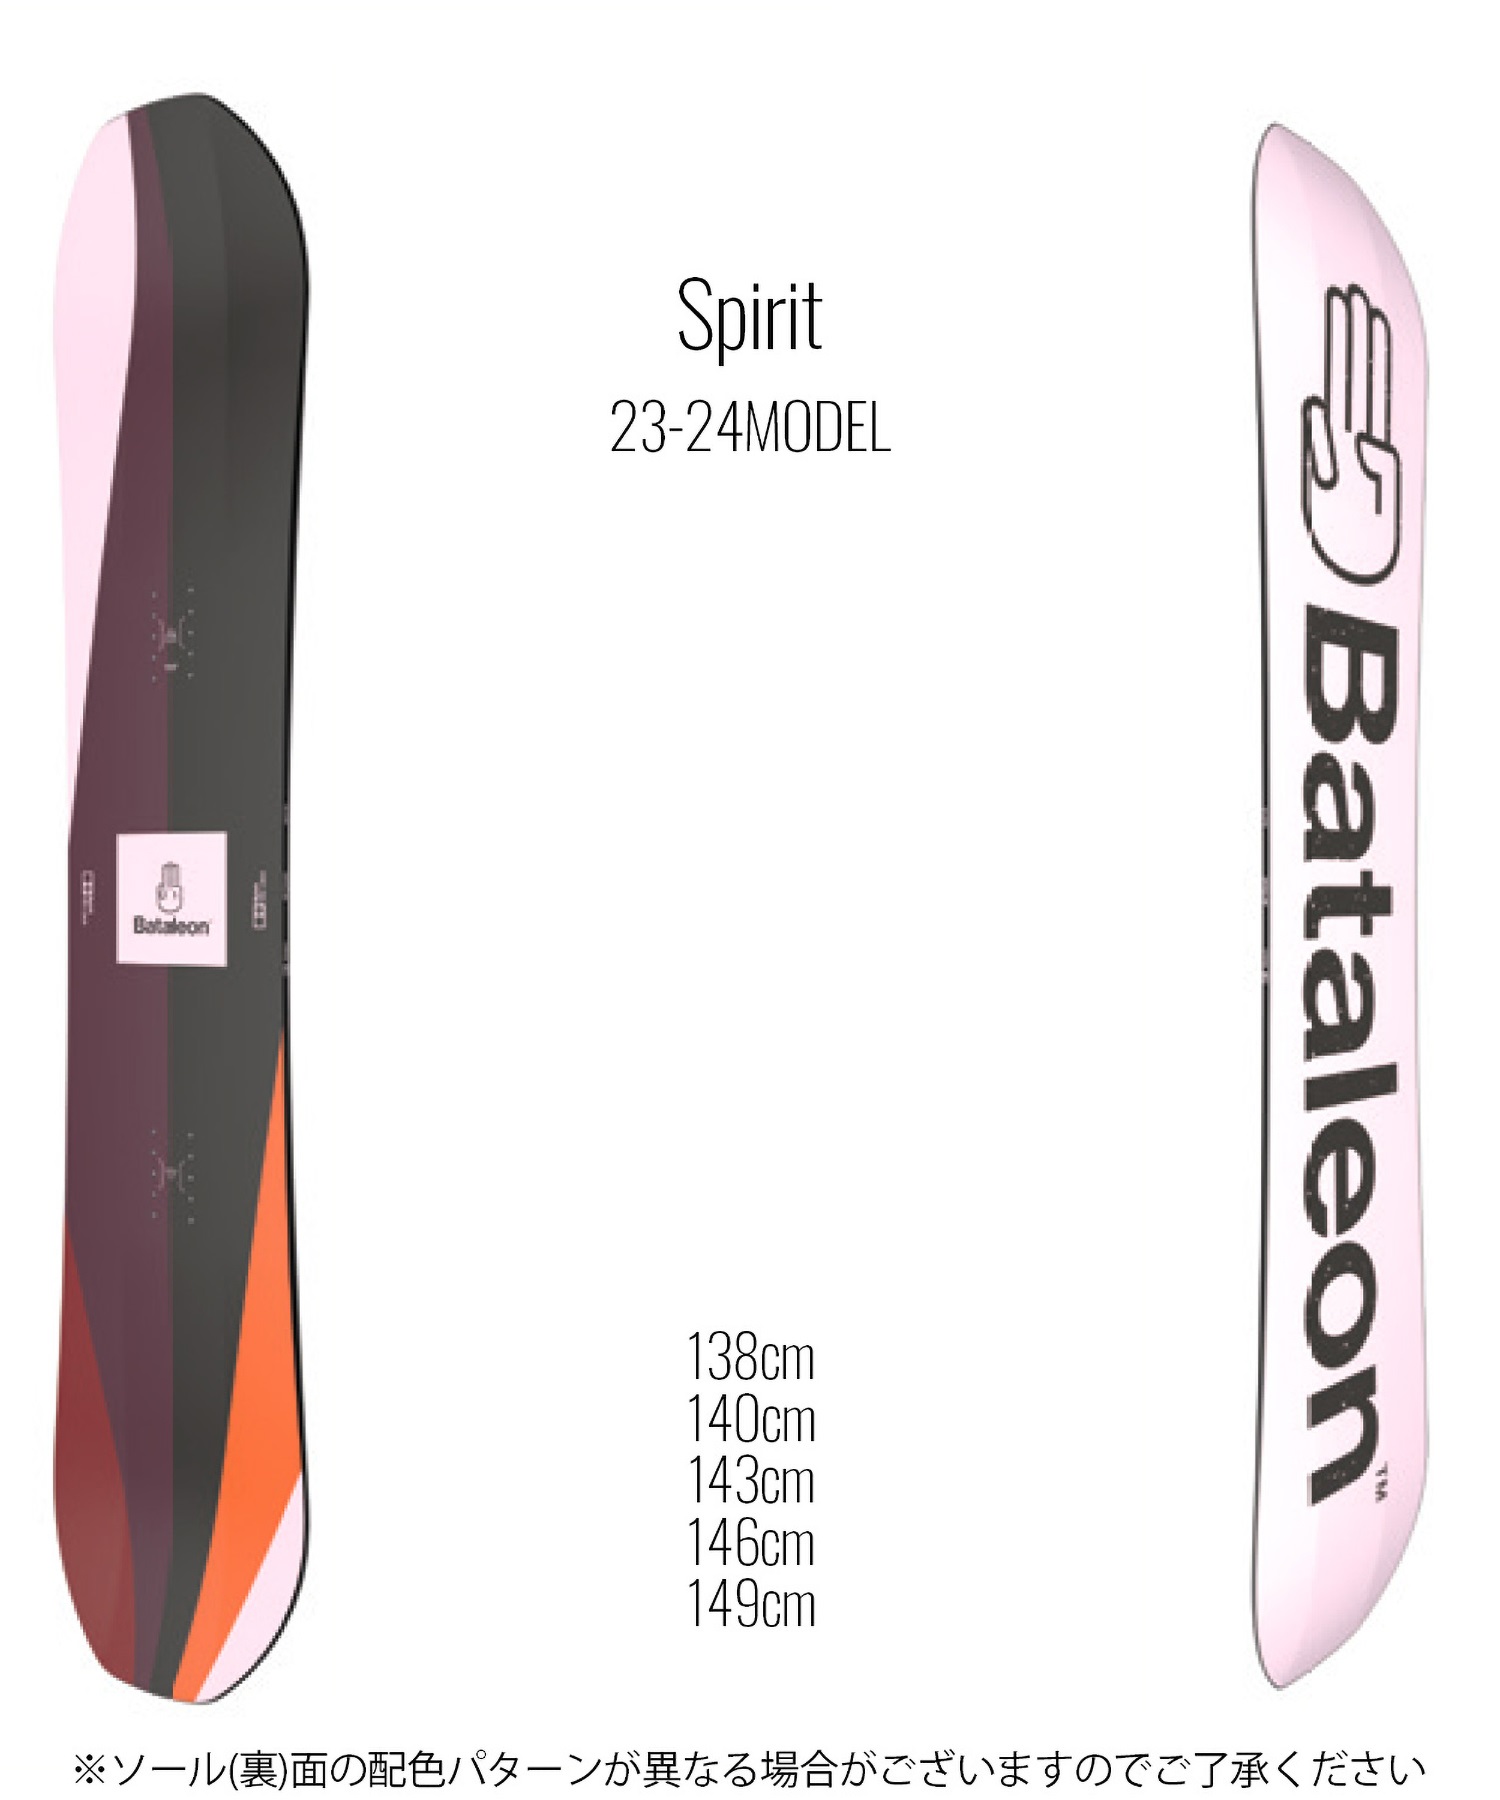 【早期購入/店頭受取対象外】スノーボード 板 レディース BATALEON バタレオン Spirit 23-24モデル ムラサキスポーツ KK C10(Spirit-138cm)